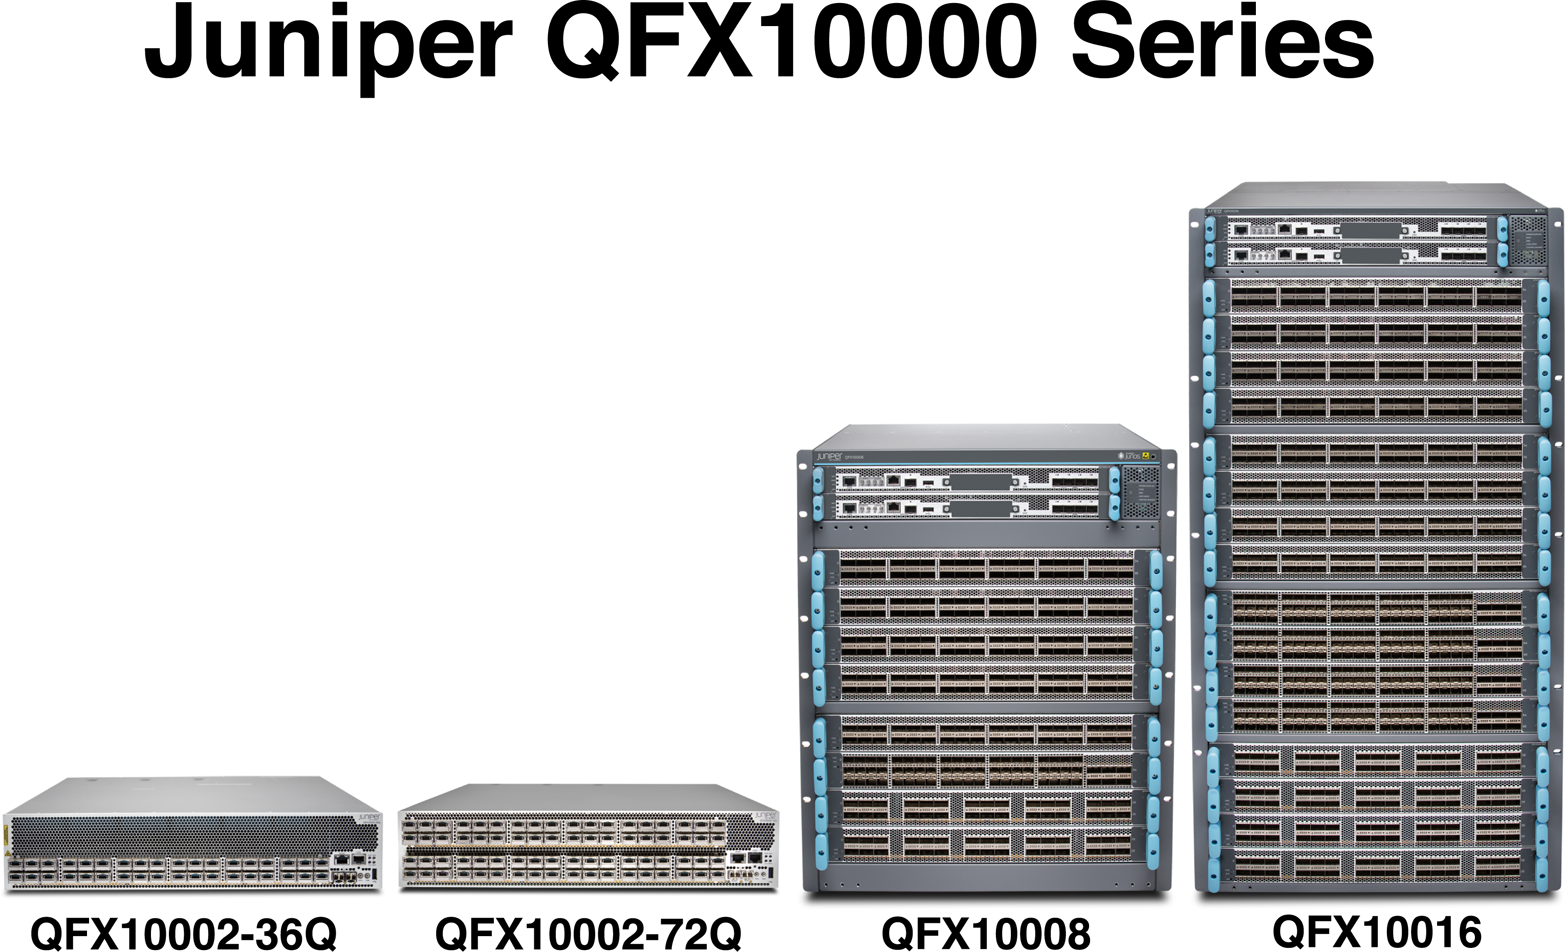 Juniper QFX10000 Series lineup